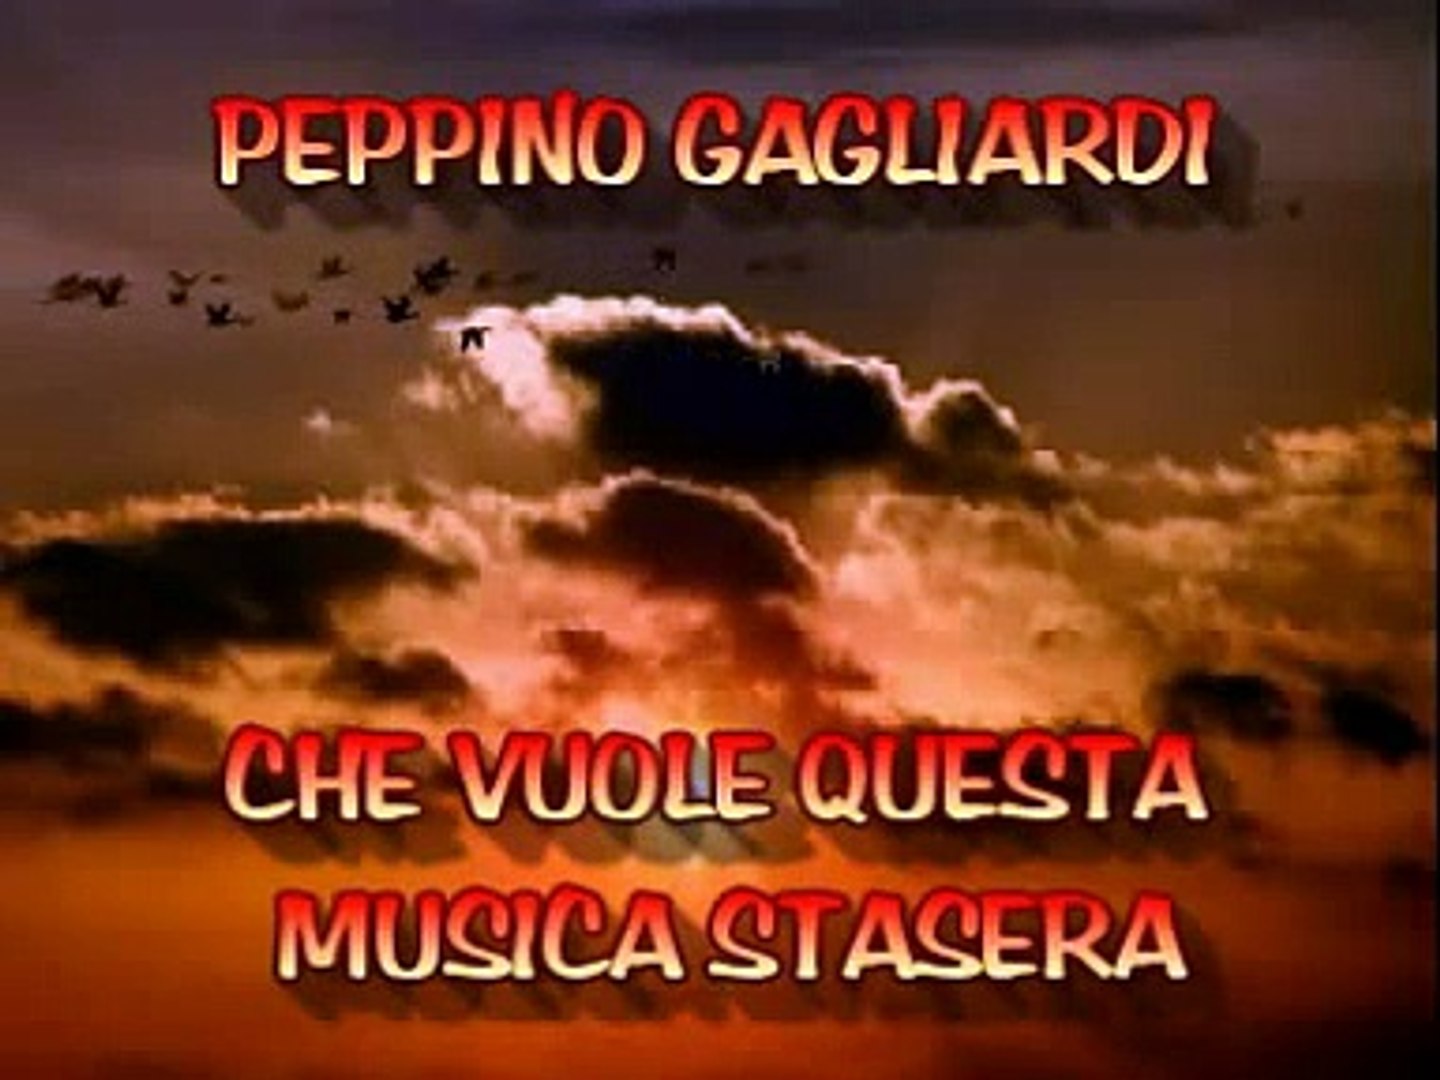 PEPPINO GAGLIARDI CHE VUOLE QUESTA MUSICA STASERA - Video Dailymotion